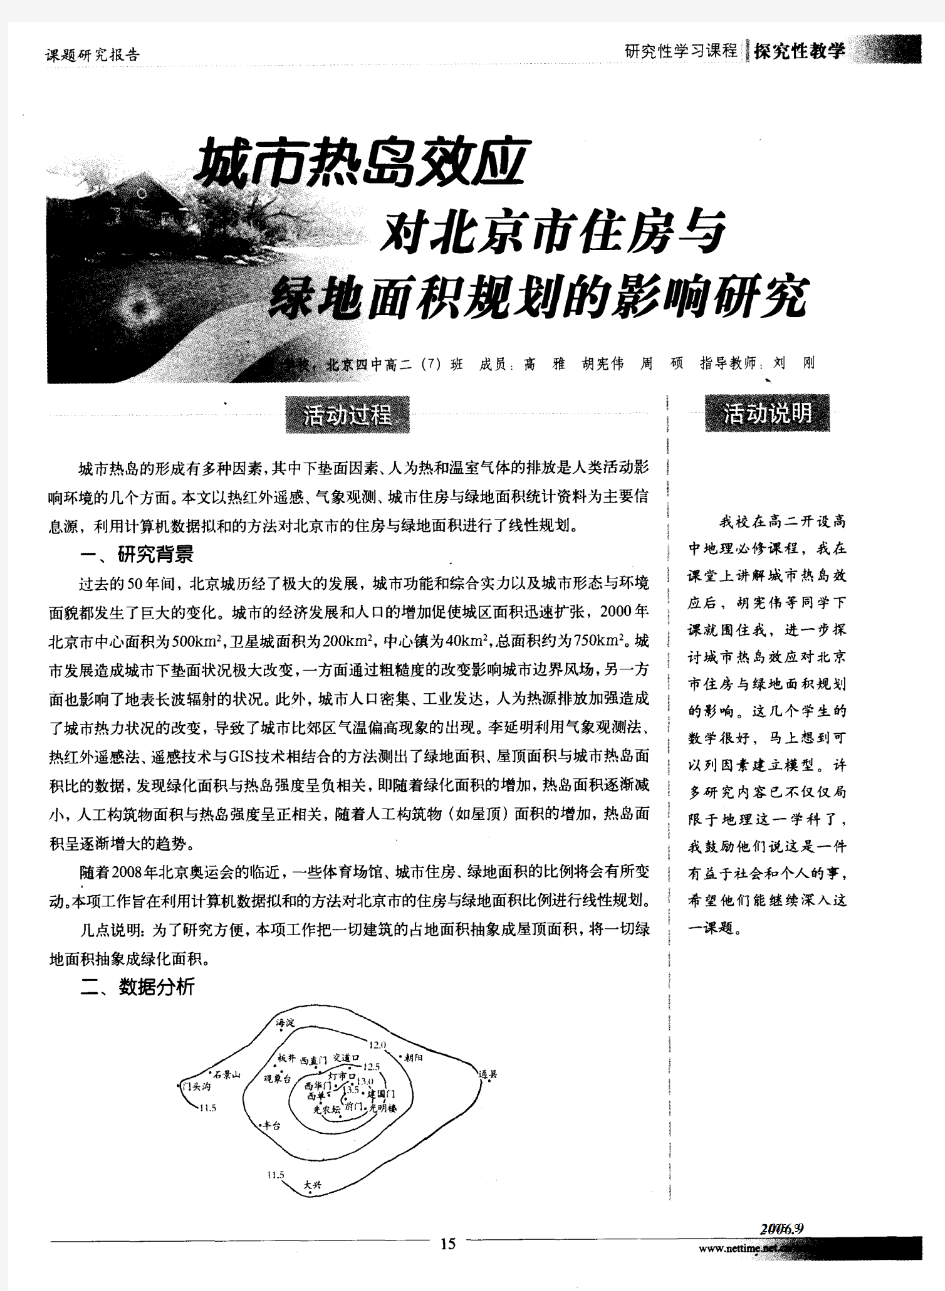 城市热岛效应对北京市住房与绿地面积规划的影响研究